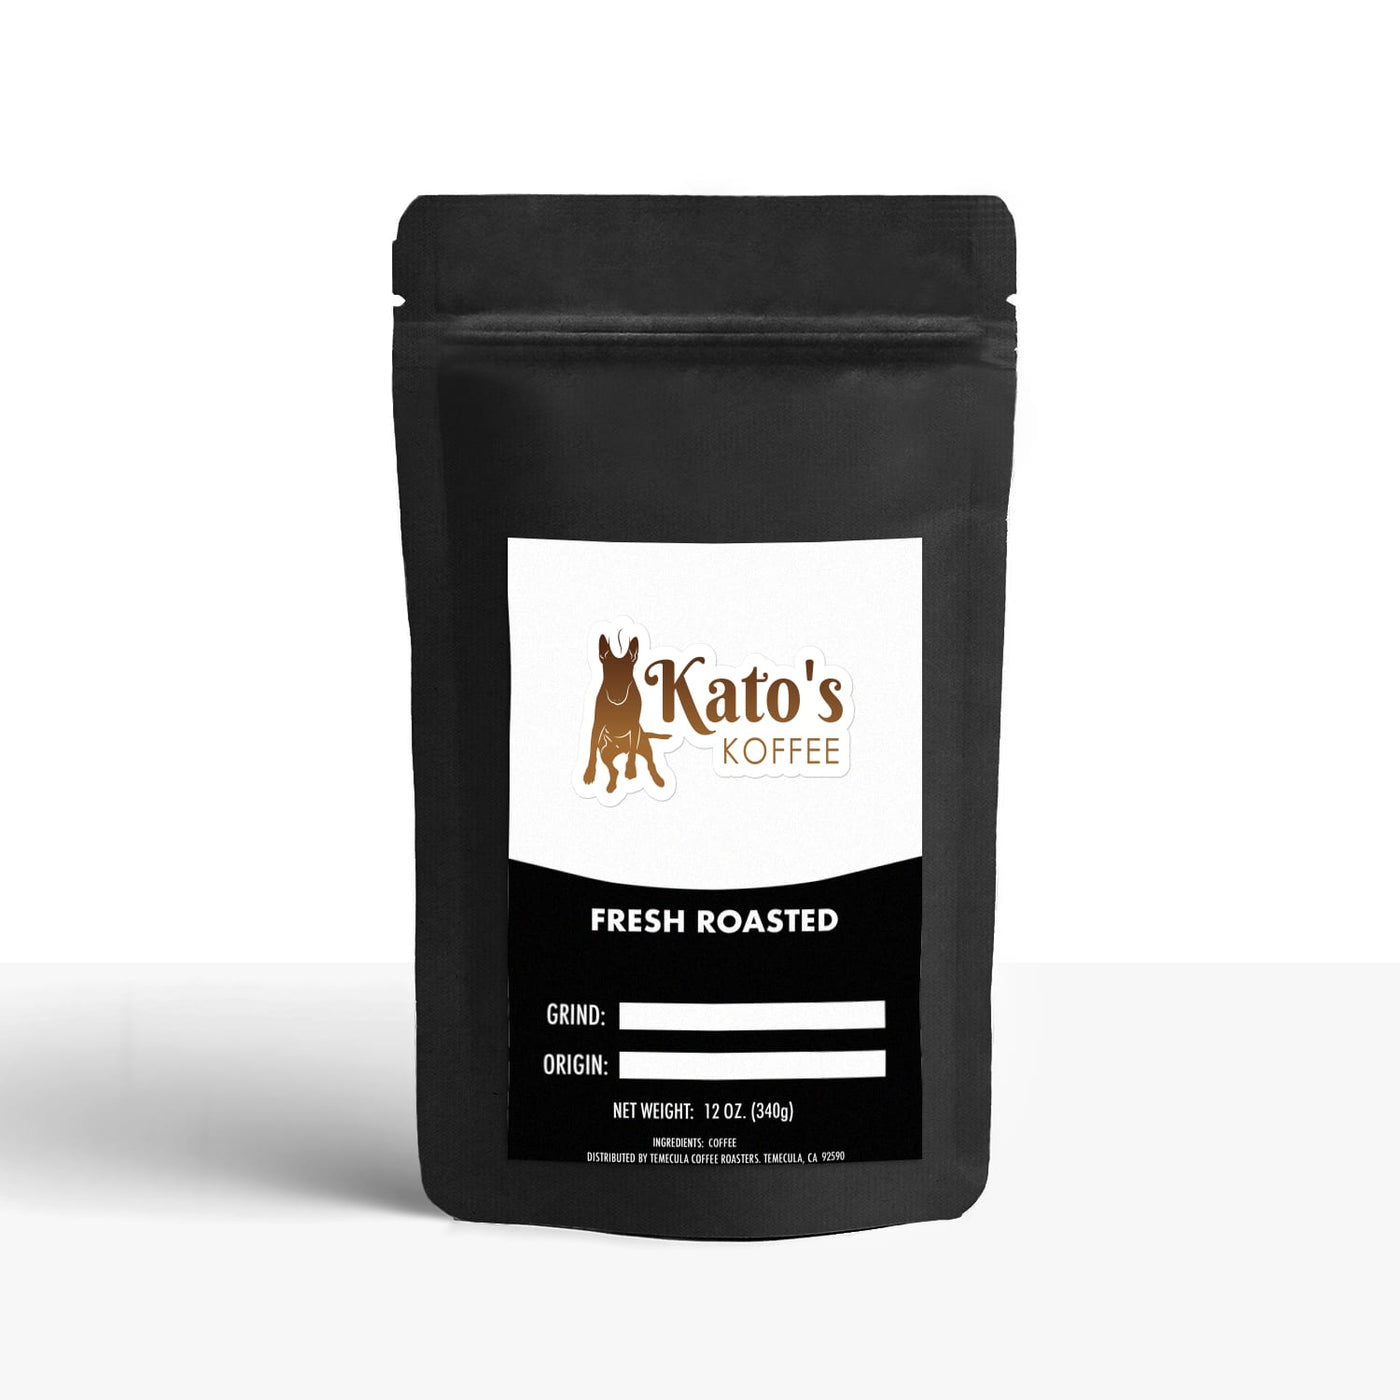 Mexico - Kato's Koffee